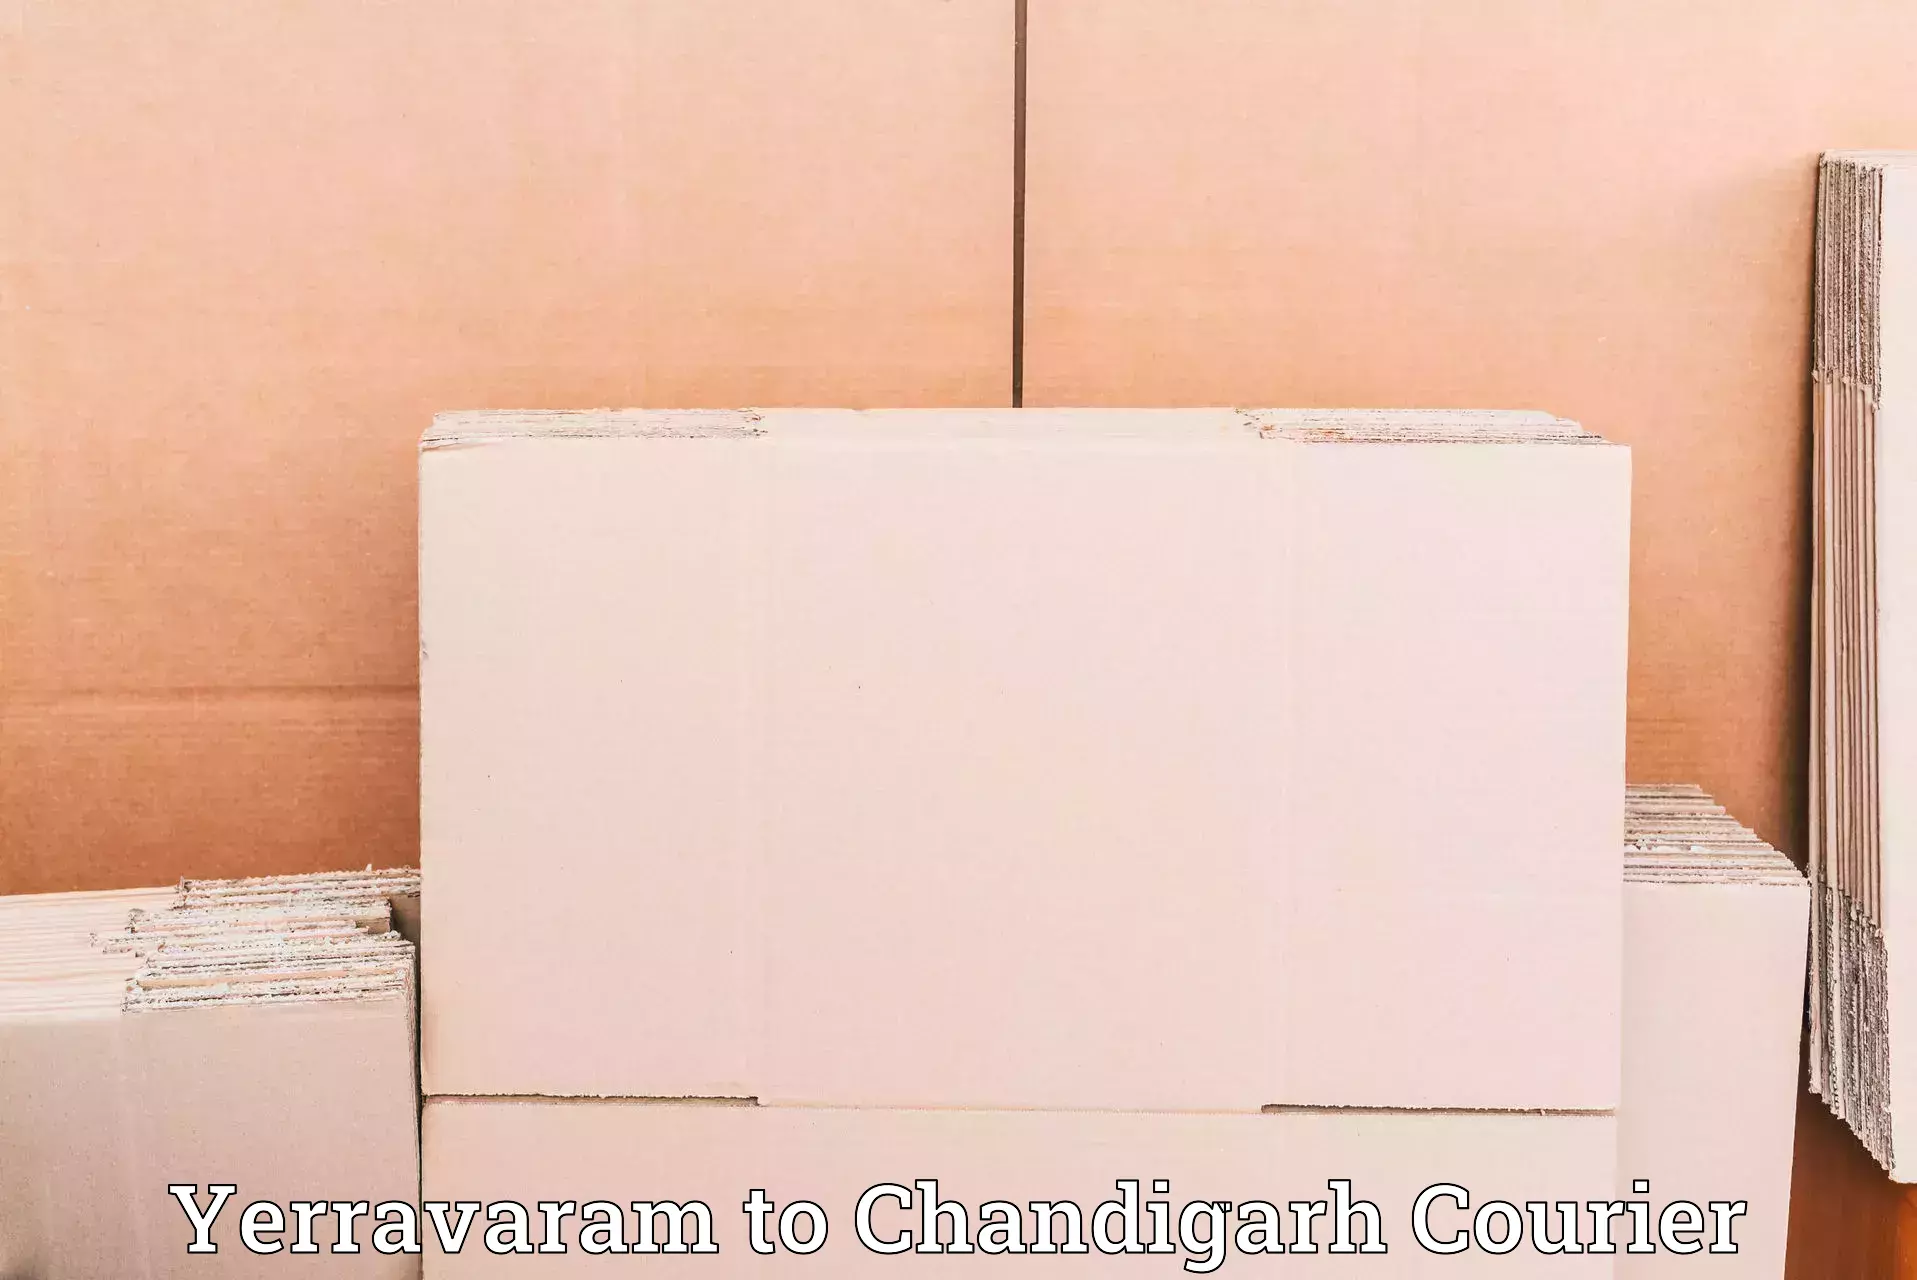 High-capacity courier solutions Yerravaram to Chandigarh